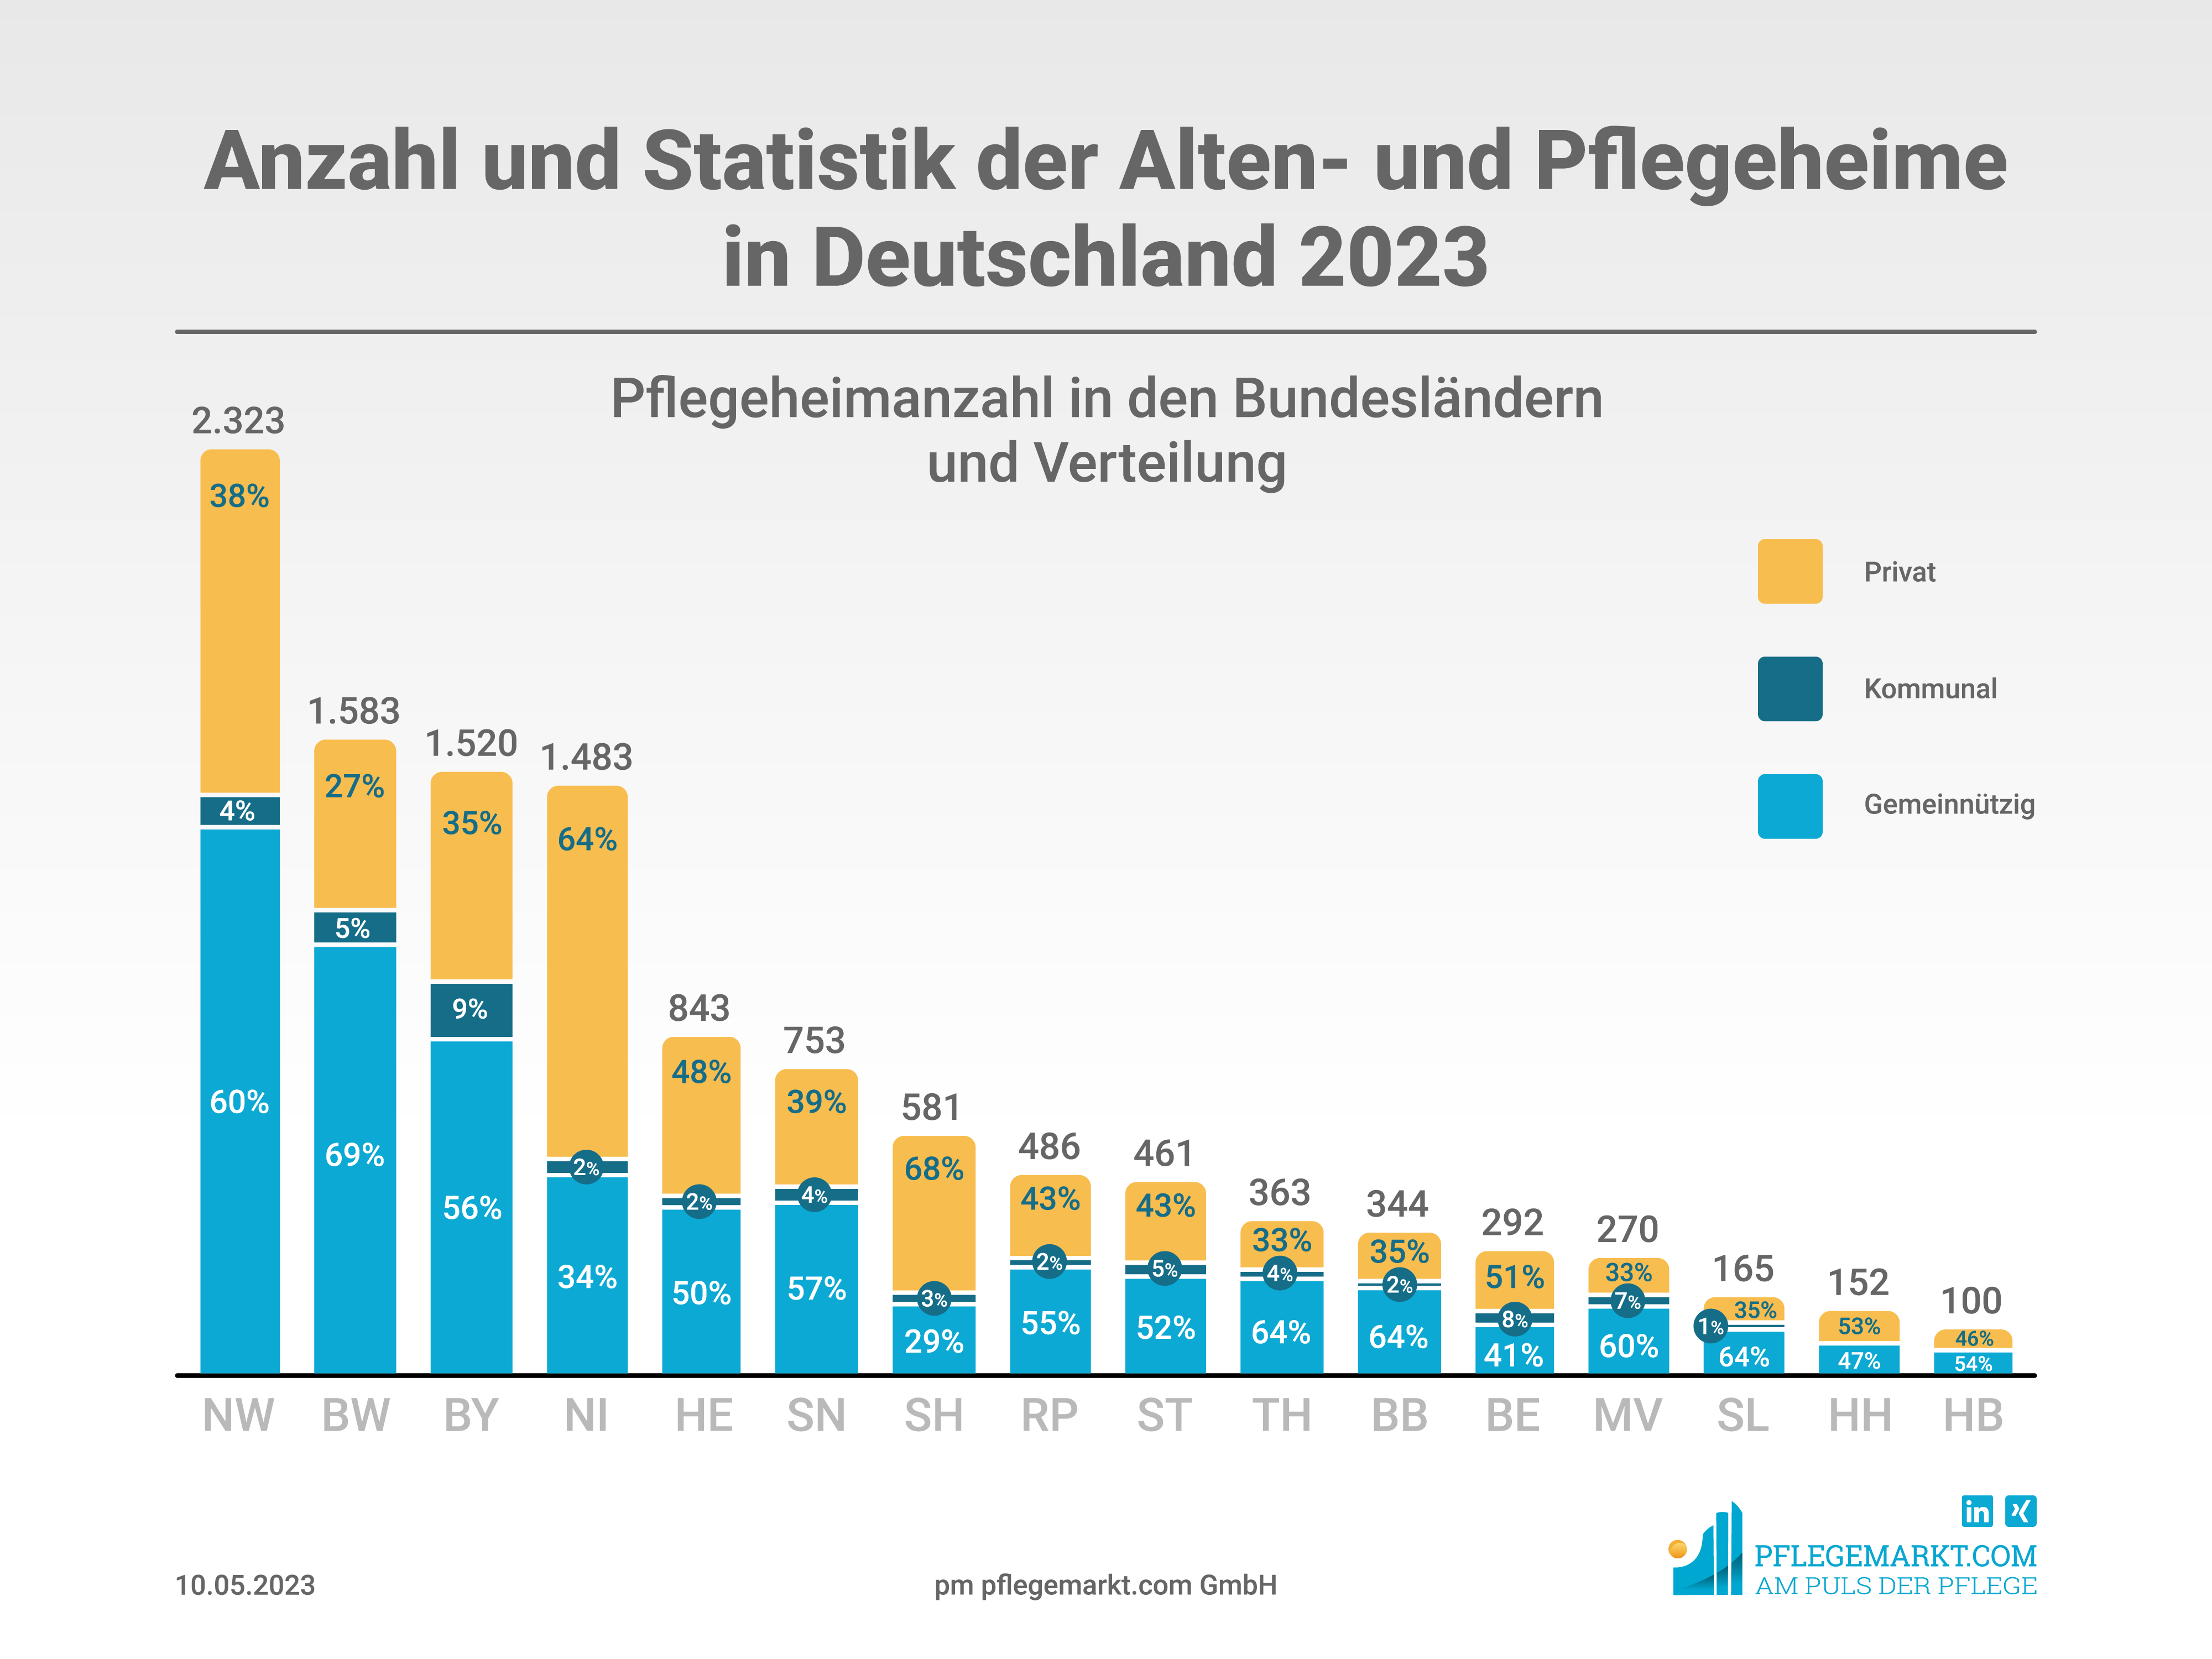 Anzahl und Statistik der Alten- und Pflegeheime in Deutschland 2023 - Verteilung nach Bundesland